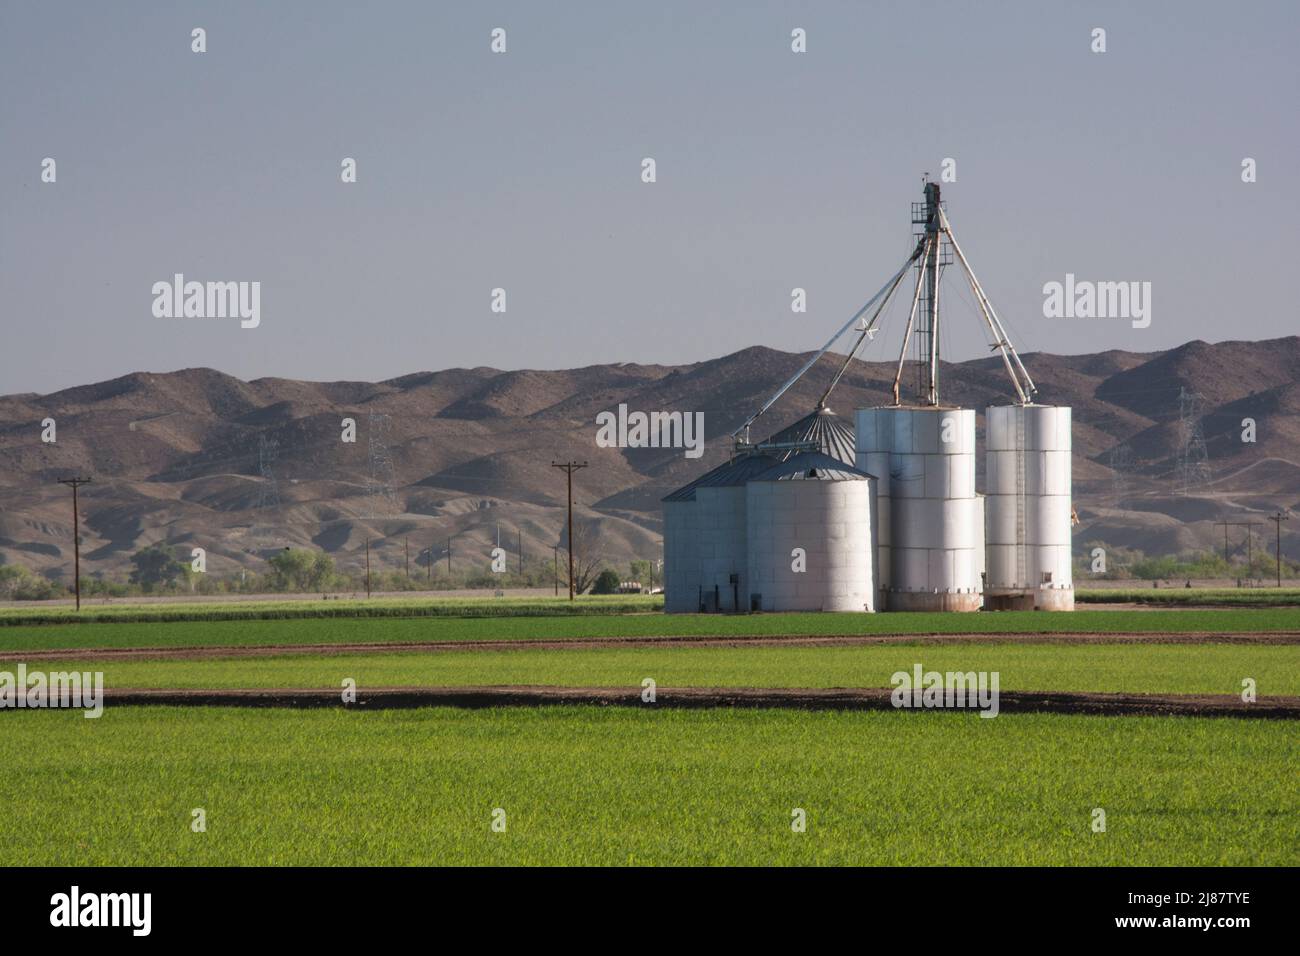 Silos et cultures céréalières près de Yuma, Arizona, États-Unis Banque D'Images